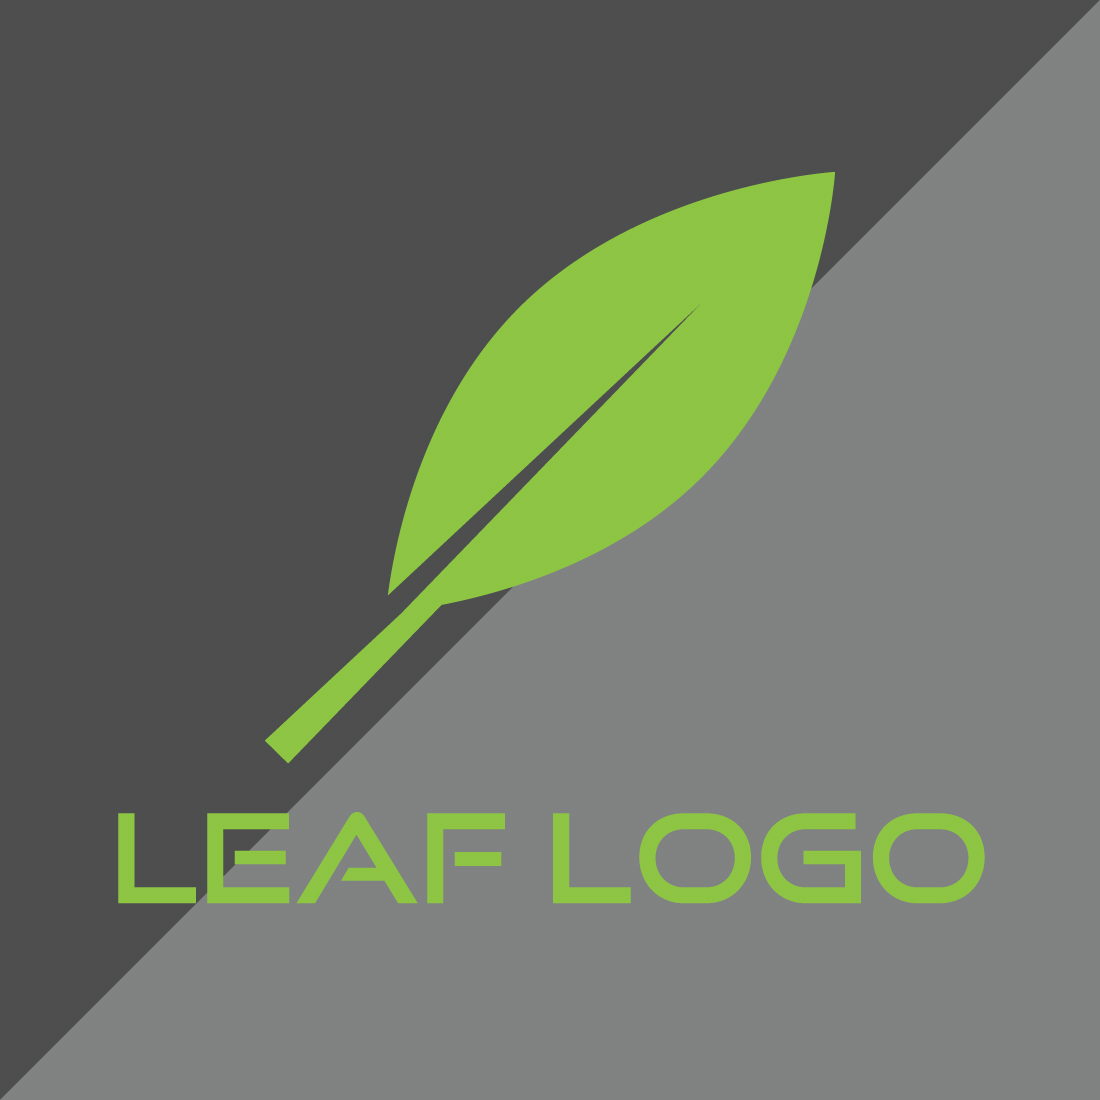 Green leaf logo, Simple leaf logo, Modern leaf logo, Creative leaf logo, Unique leaf logo, Stylish leaf logo, Vector file & template preview image.